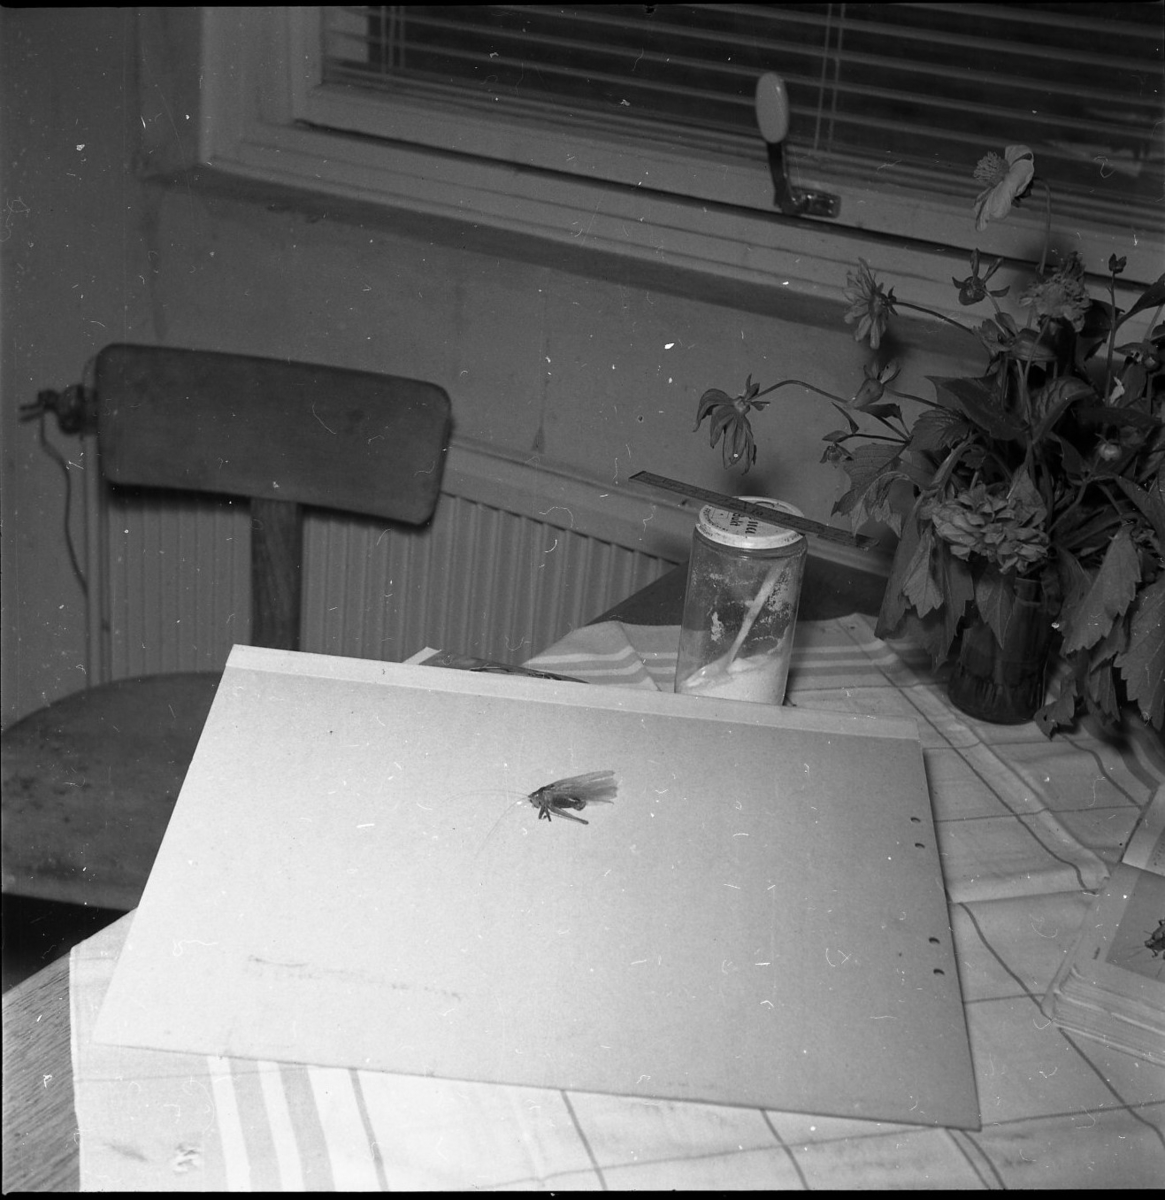 Interiör från livsmedelsindustrin AB Sprayprodukter i Gränna. En insekt på ett papper, på ett bord med rutig duk.